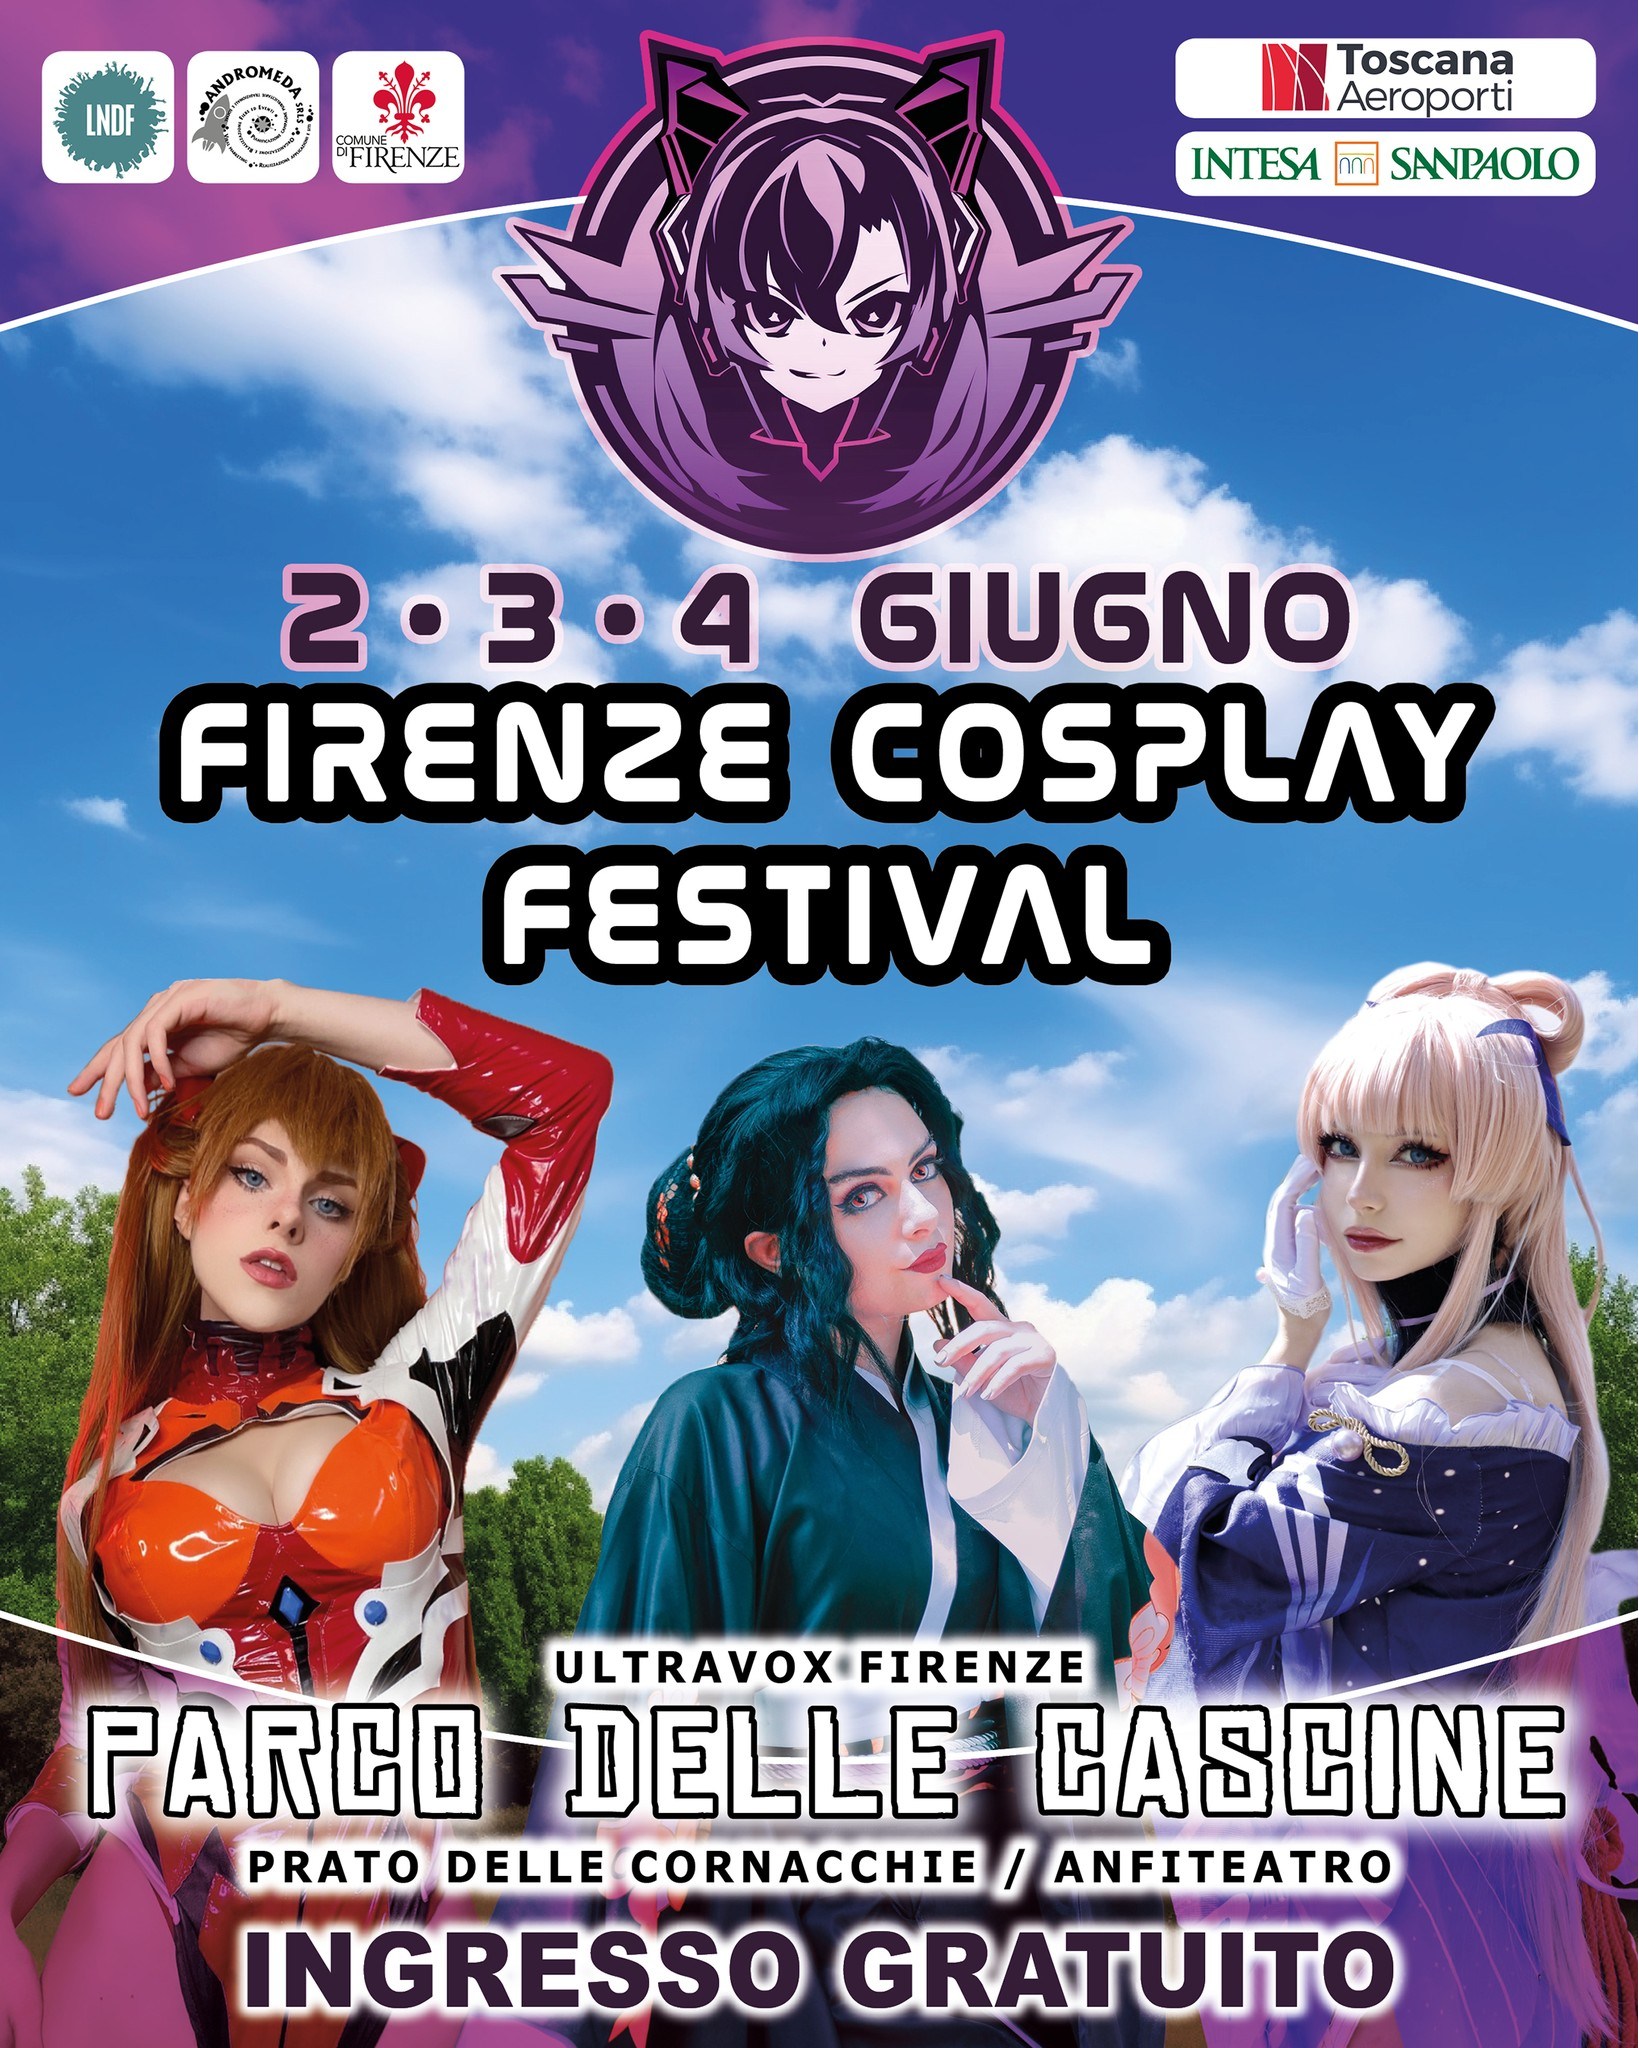 Firenze Cosplay Festival dal 2 al 4 giugno 2023